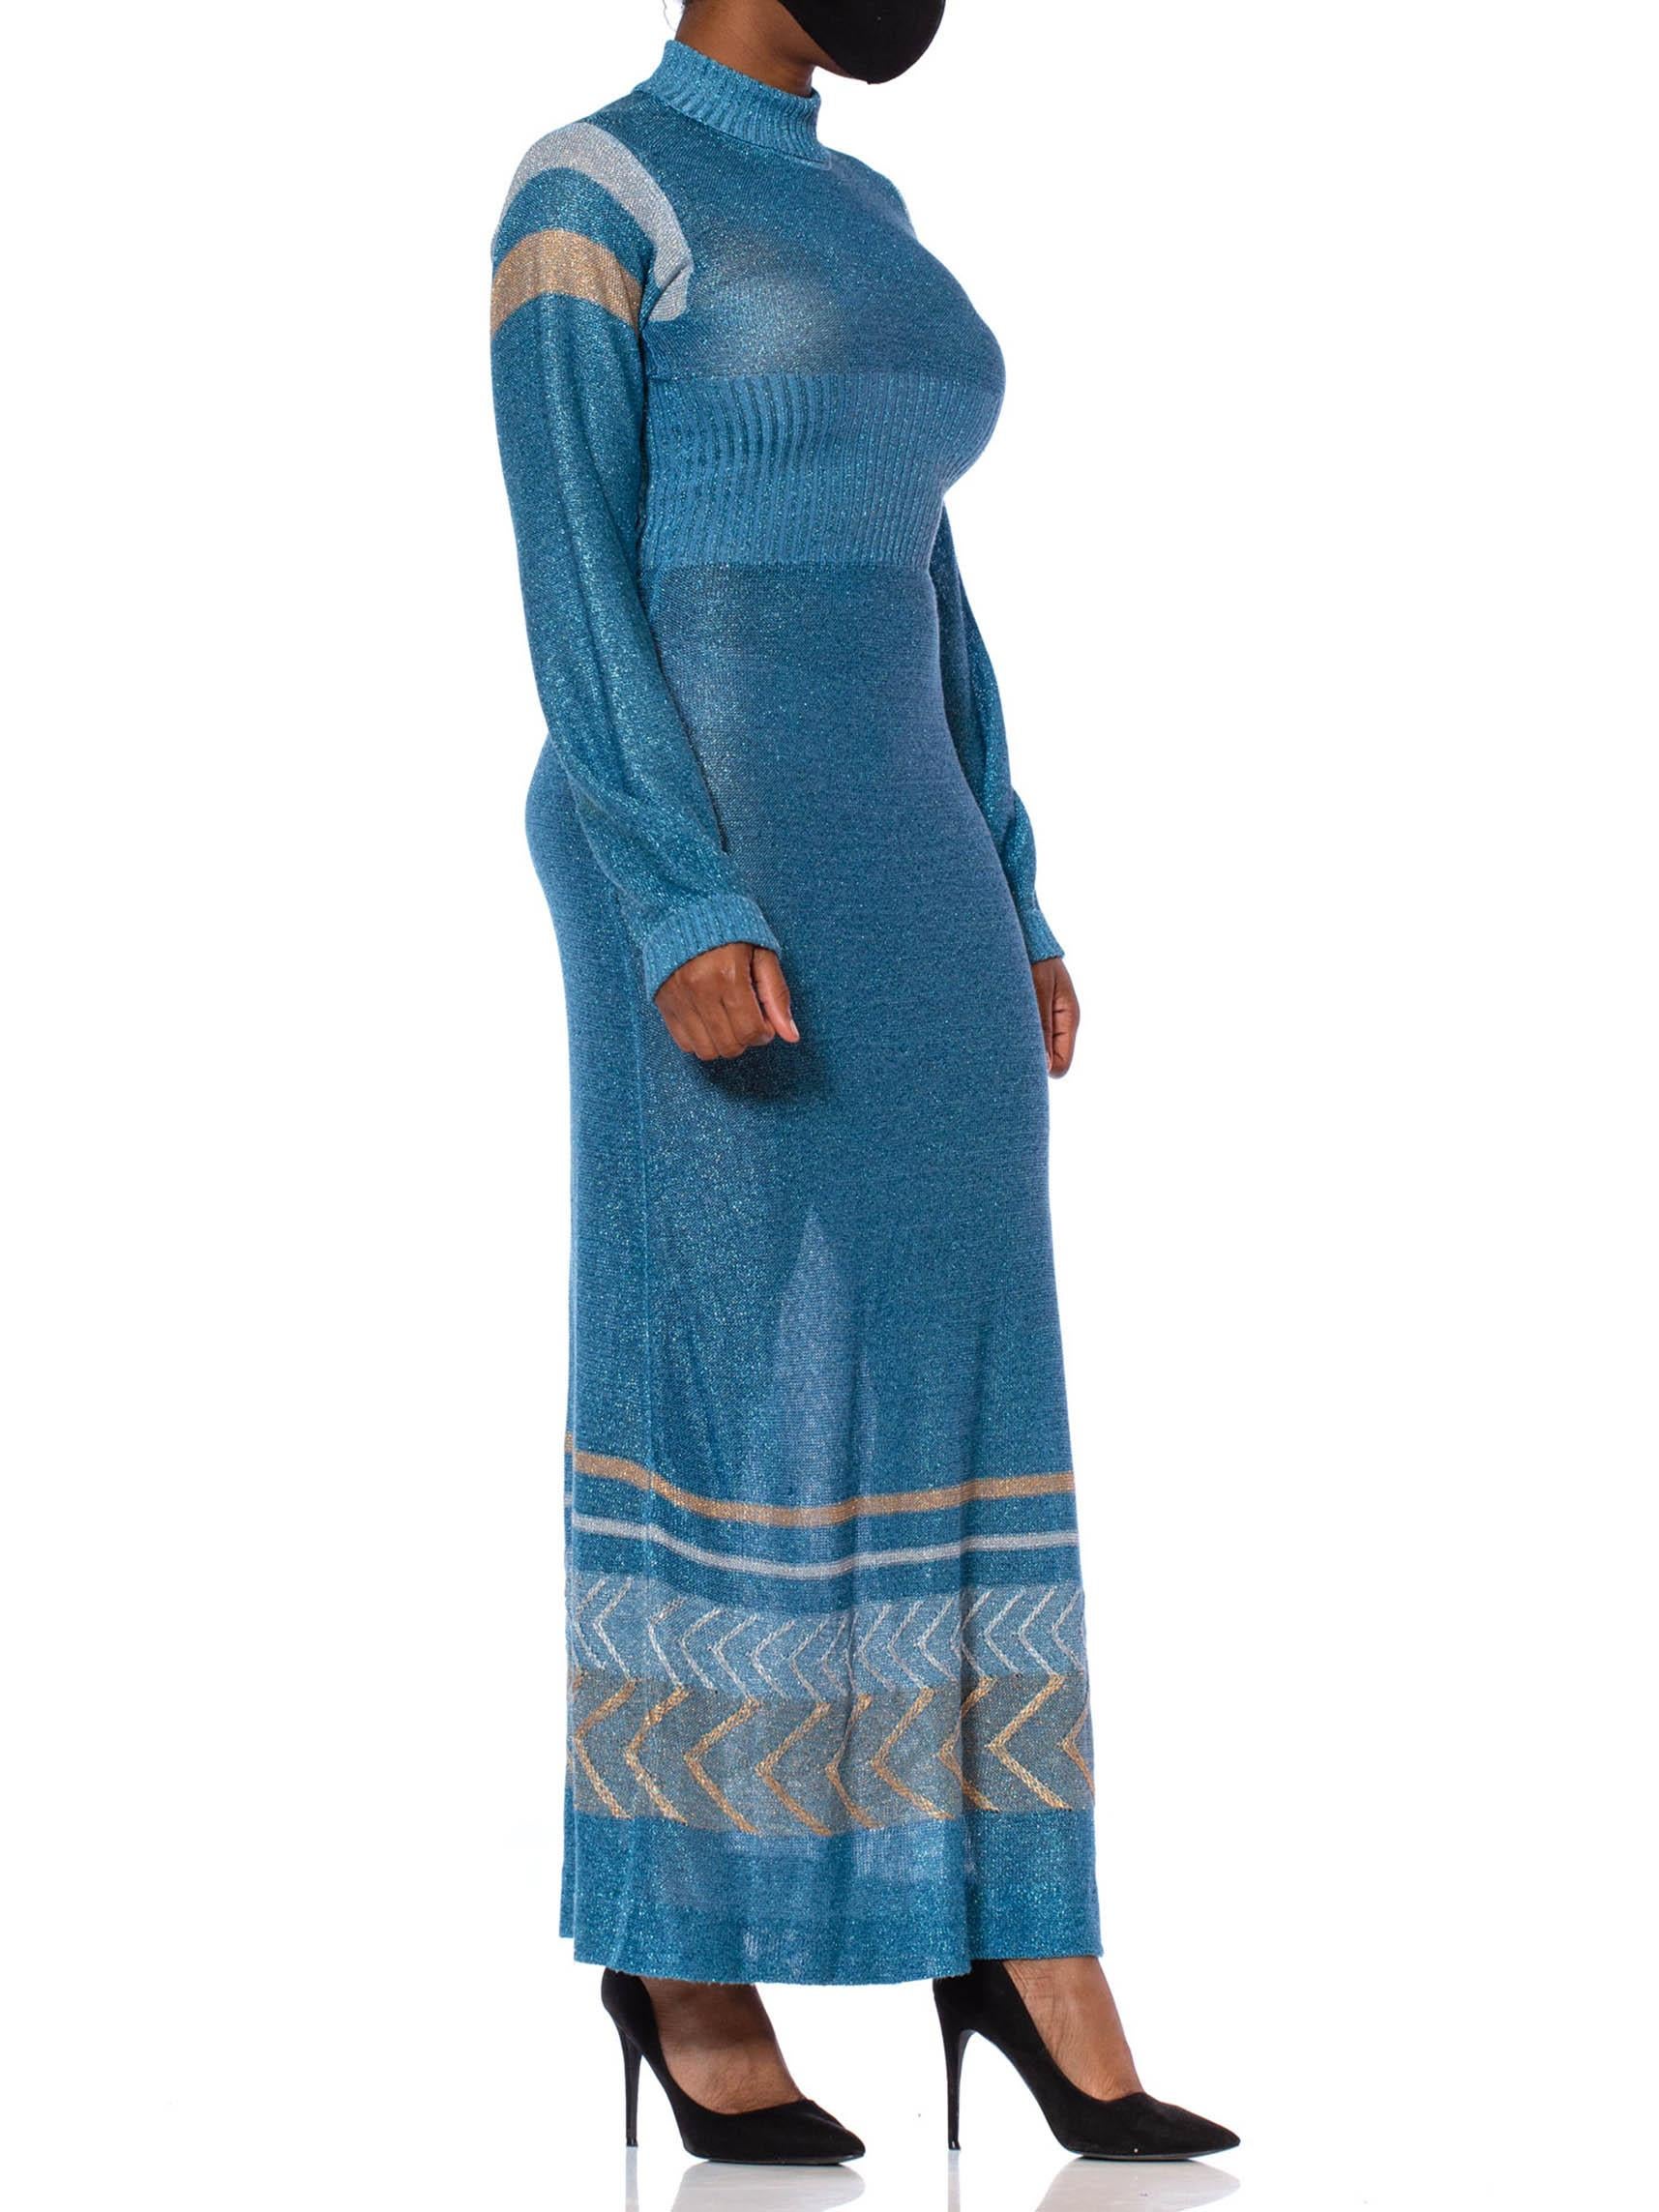 Bleu Robe longue à manches longues en tricot poly/Lurex bleu aigue-marine avec or et soie, années 1970 en vente